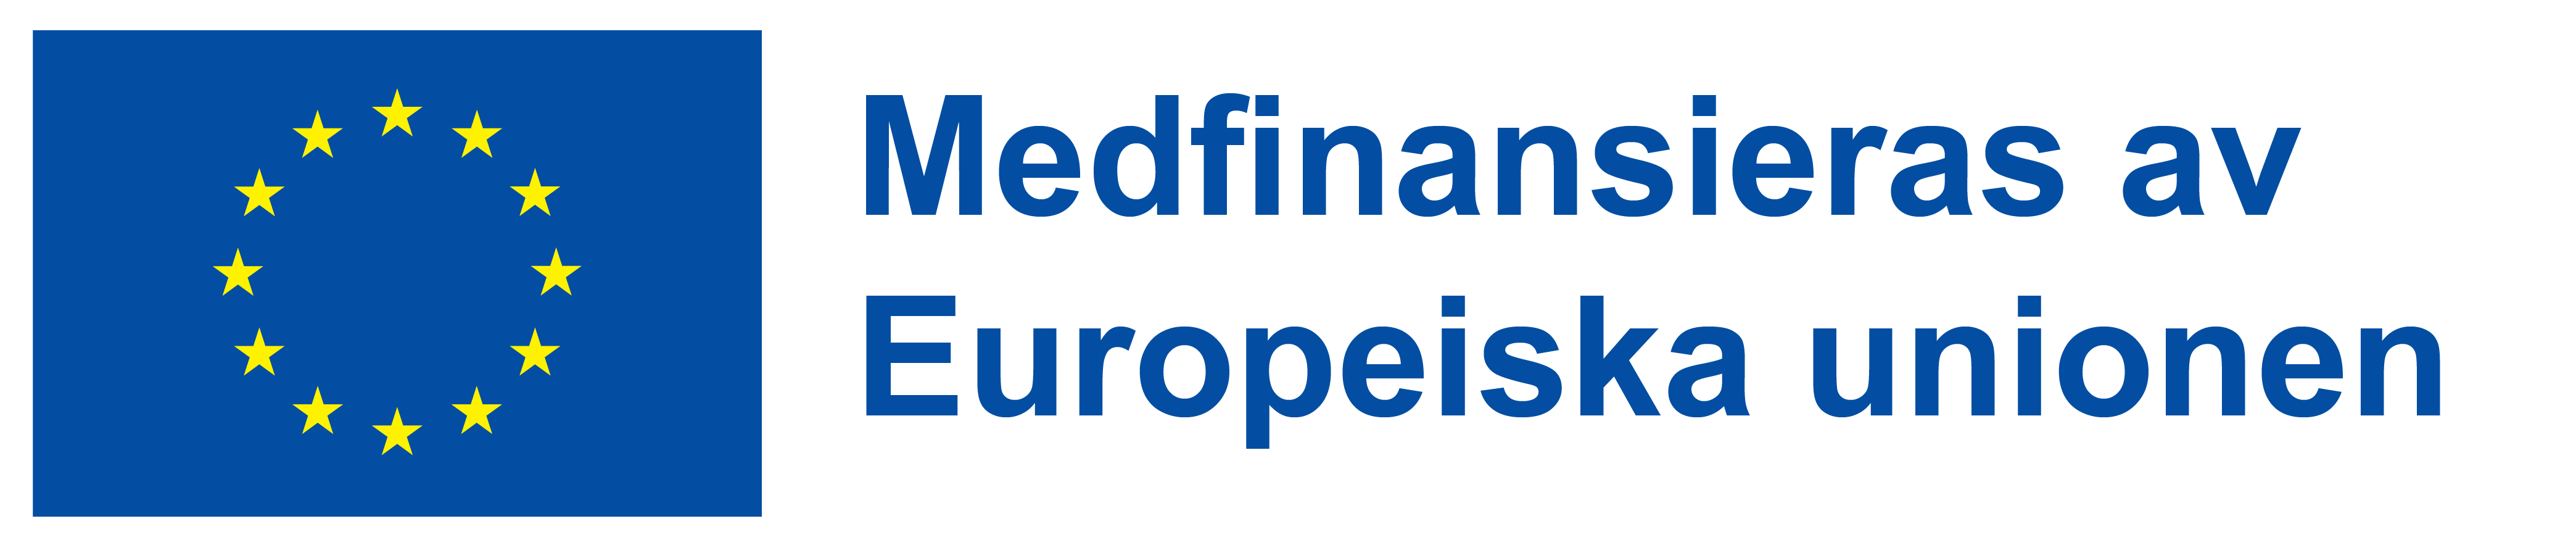 EU-flaggan intill texten Medfinansieras av Europeiska socialfonden